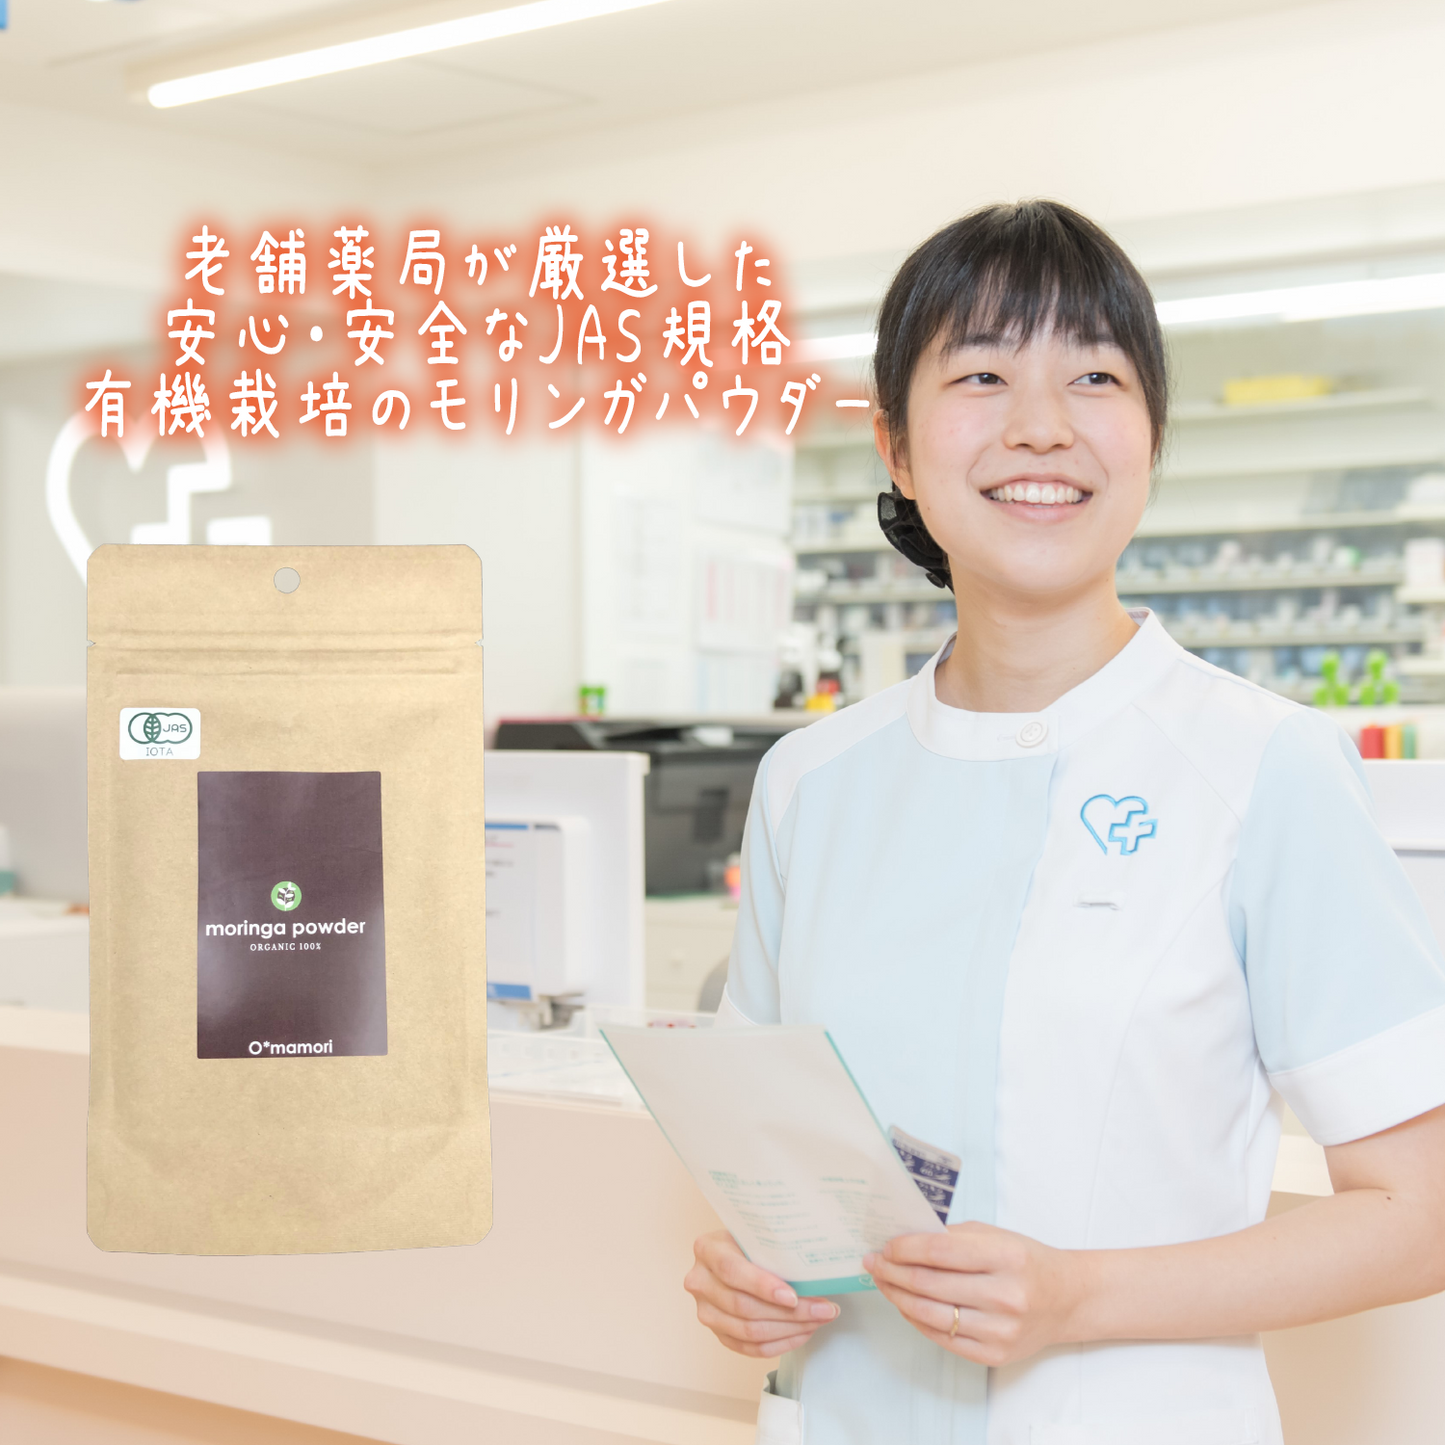 【有機JAS】沖縄県産100% 有機モリンガ粉末パウダー 30g